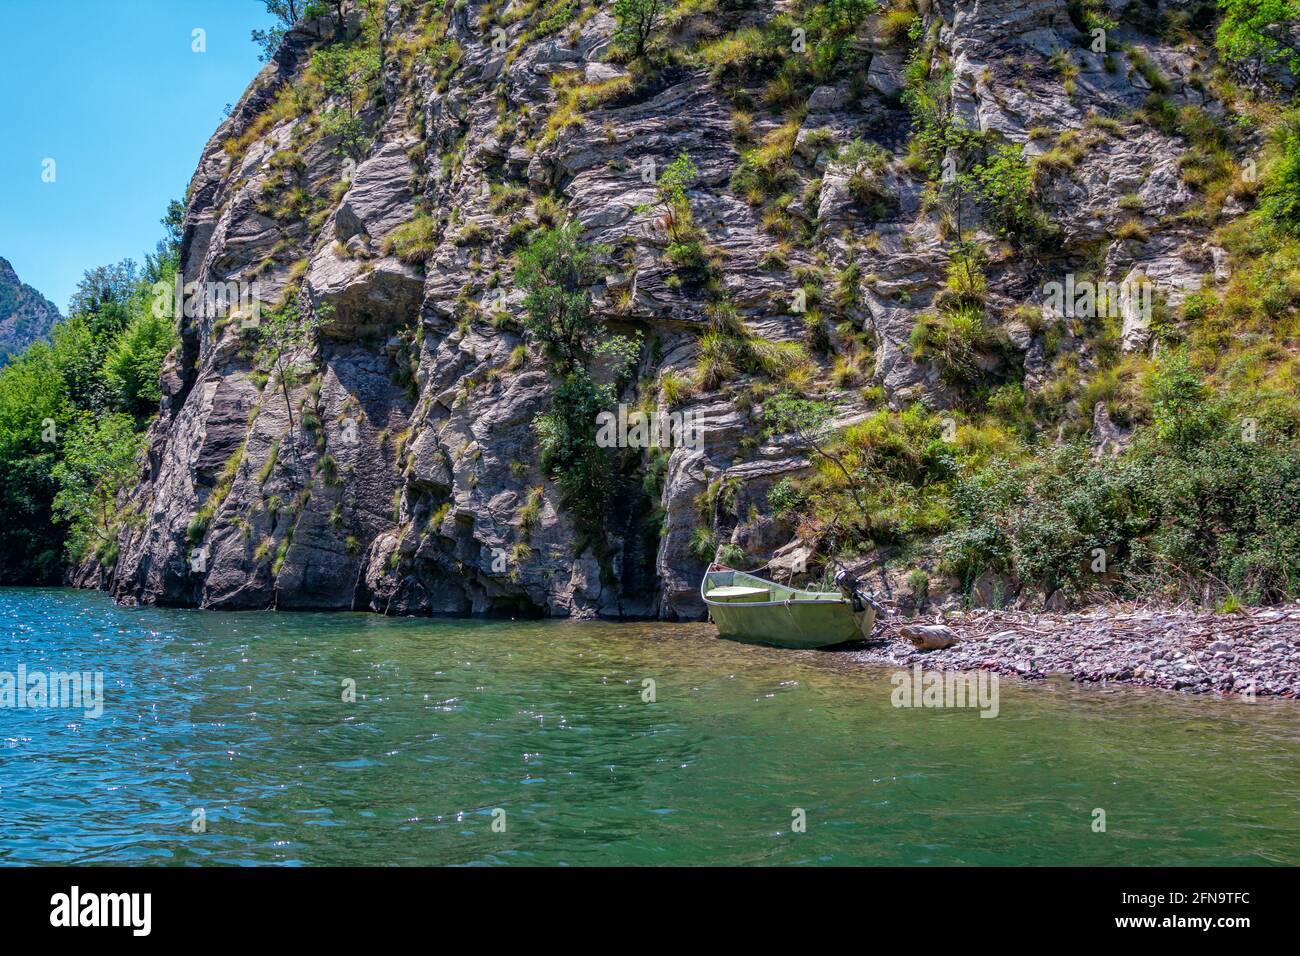 Sommerlandschaft - albanische felsige Berge, bedeckt mit üppigem Laub und See mit ruhigem blauem Wasser, Fischerboot am Ufer Stockfoto